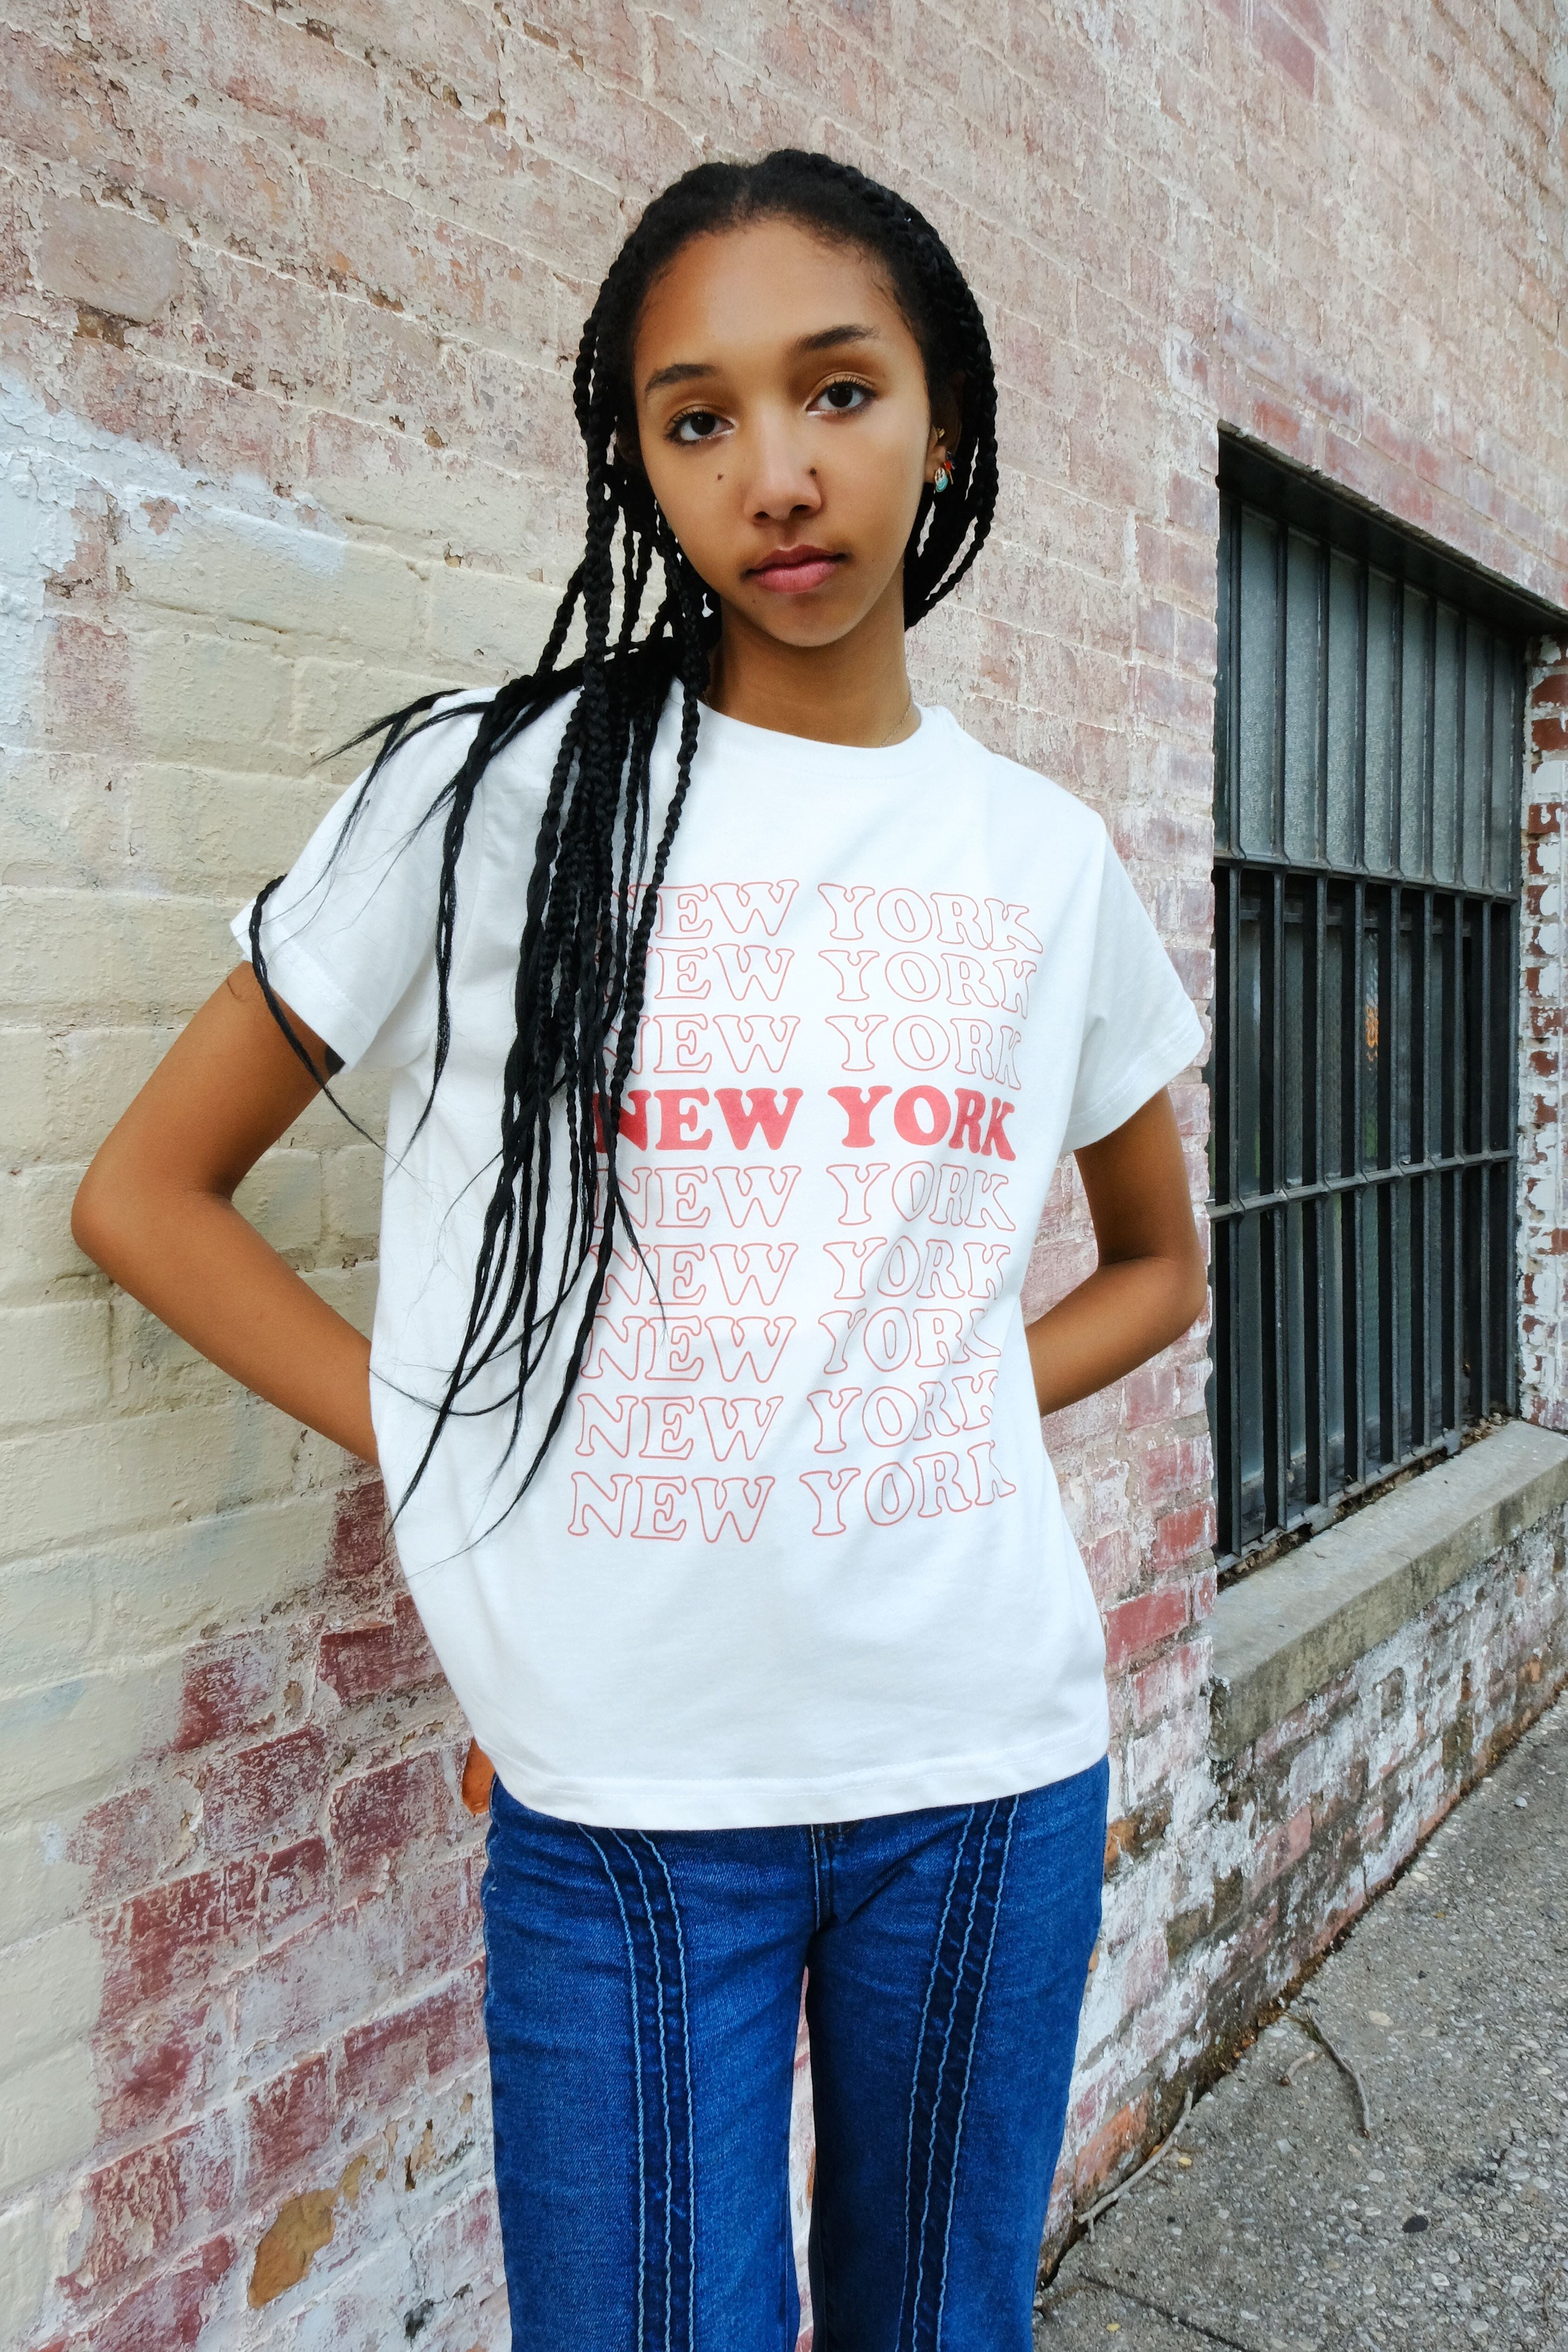 CustomTrendy New York Sweatshirt, New York City Hoodie, East Coast Shirt, New Yorker Tee, New York Lover Gift for Women, NW Tshirt,UA5759